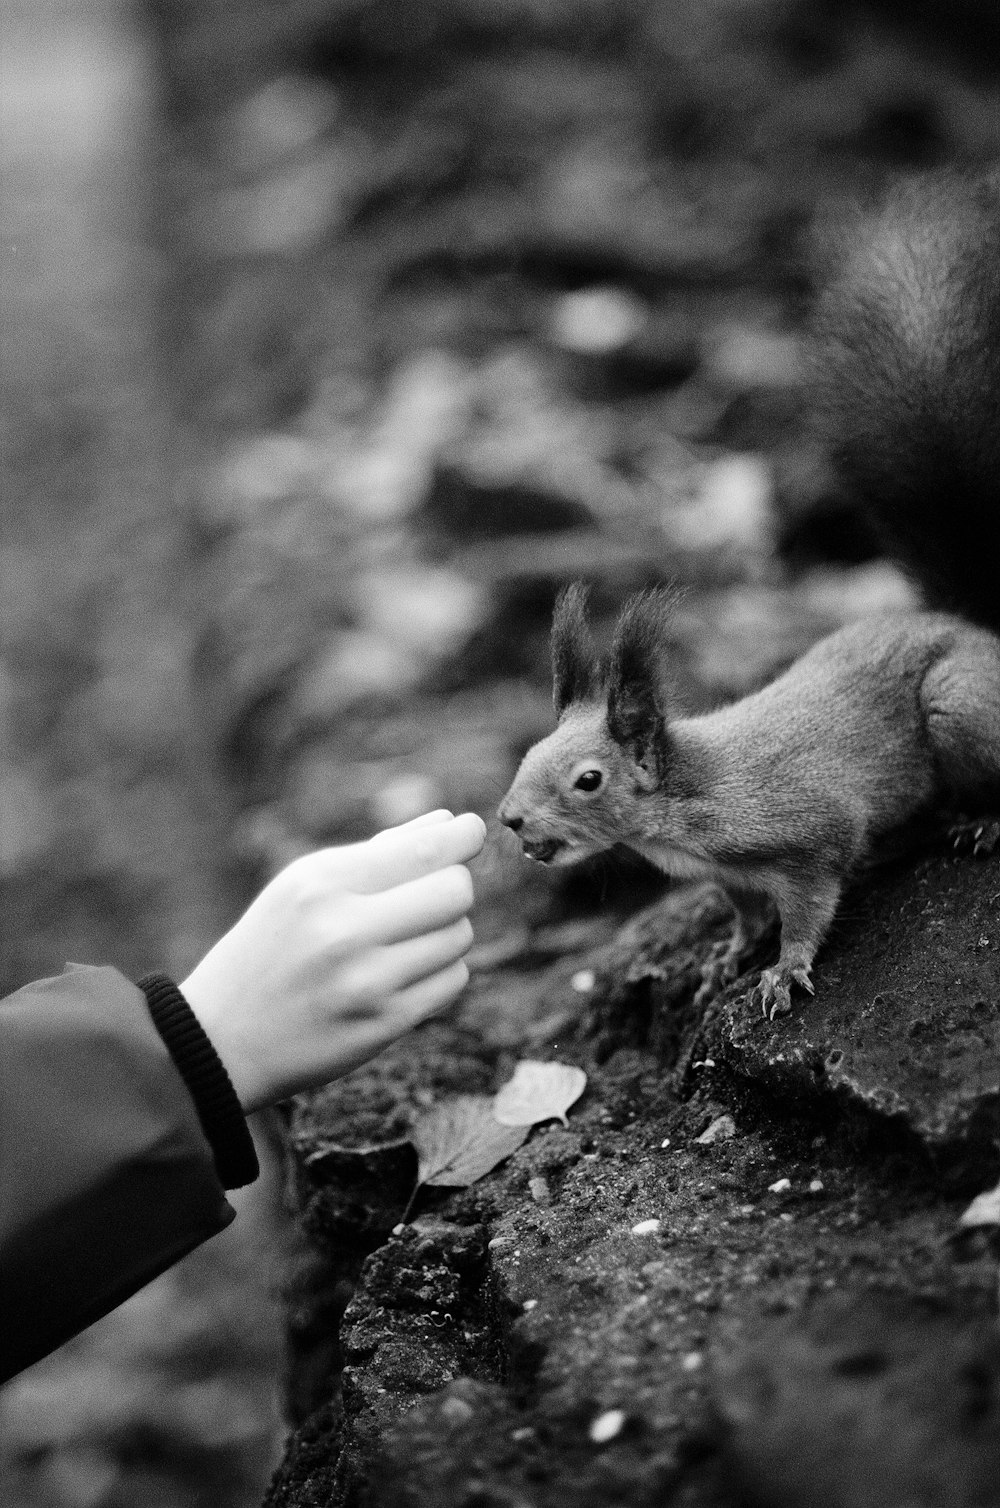 um pequeno esquilo sendo alimentado por uma pessoa